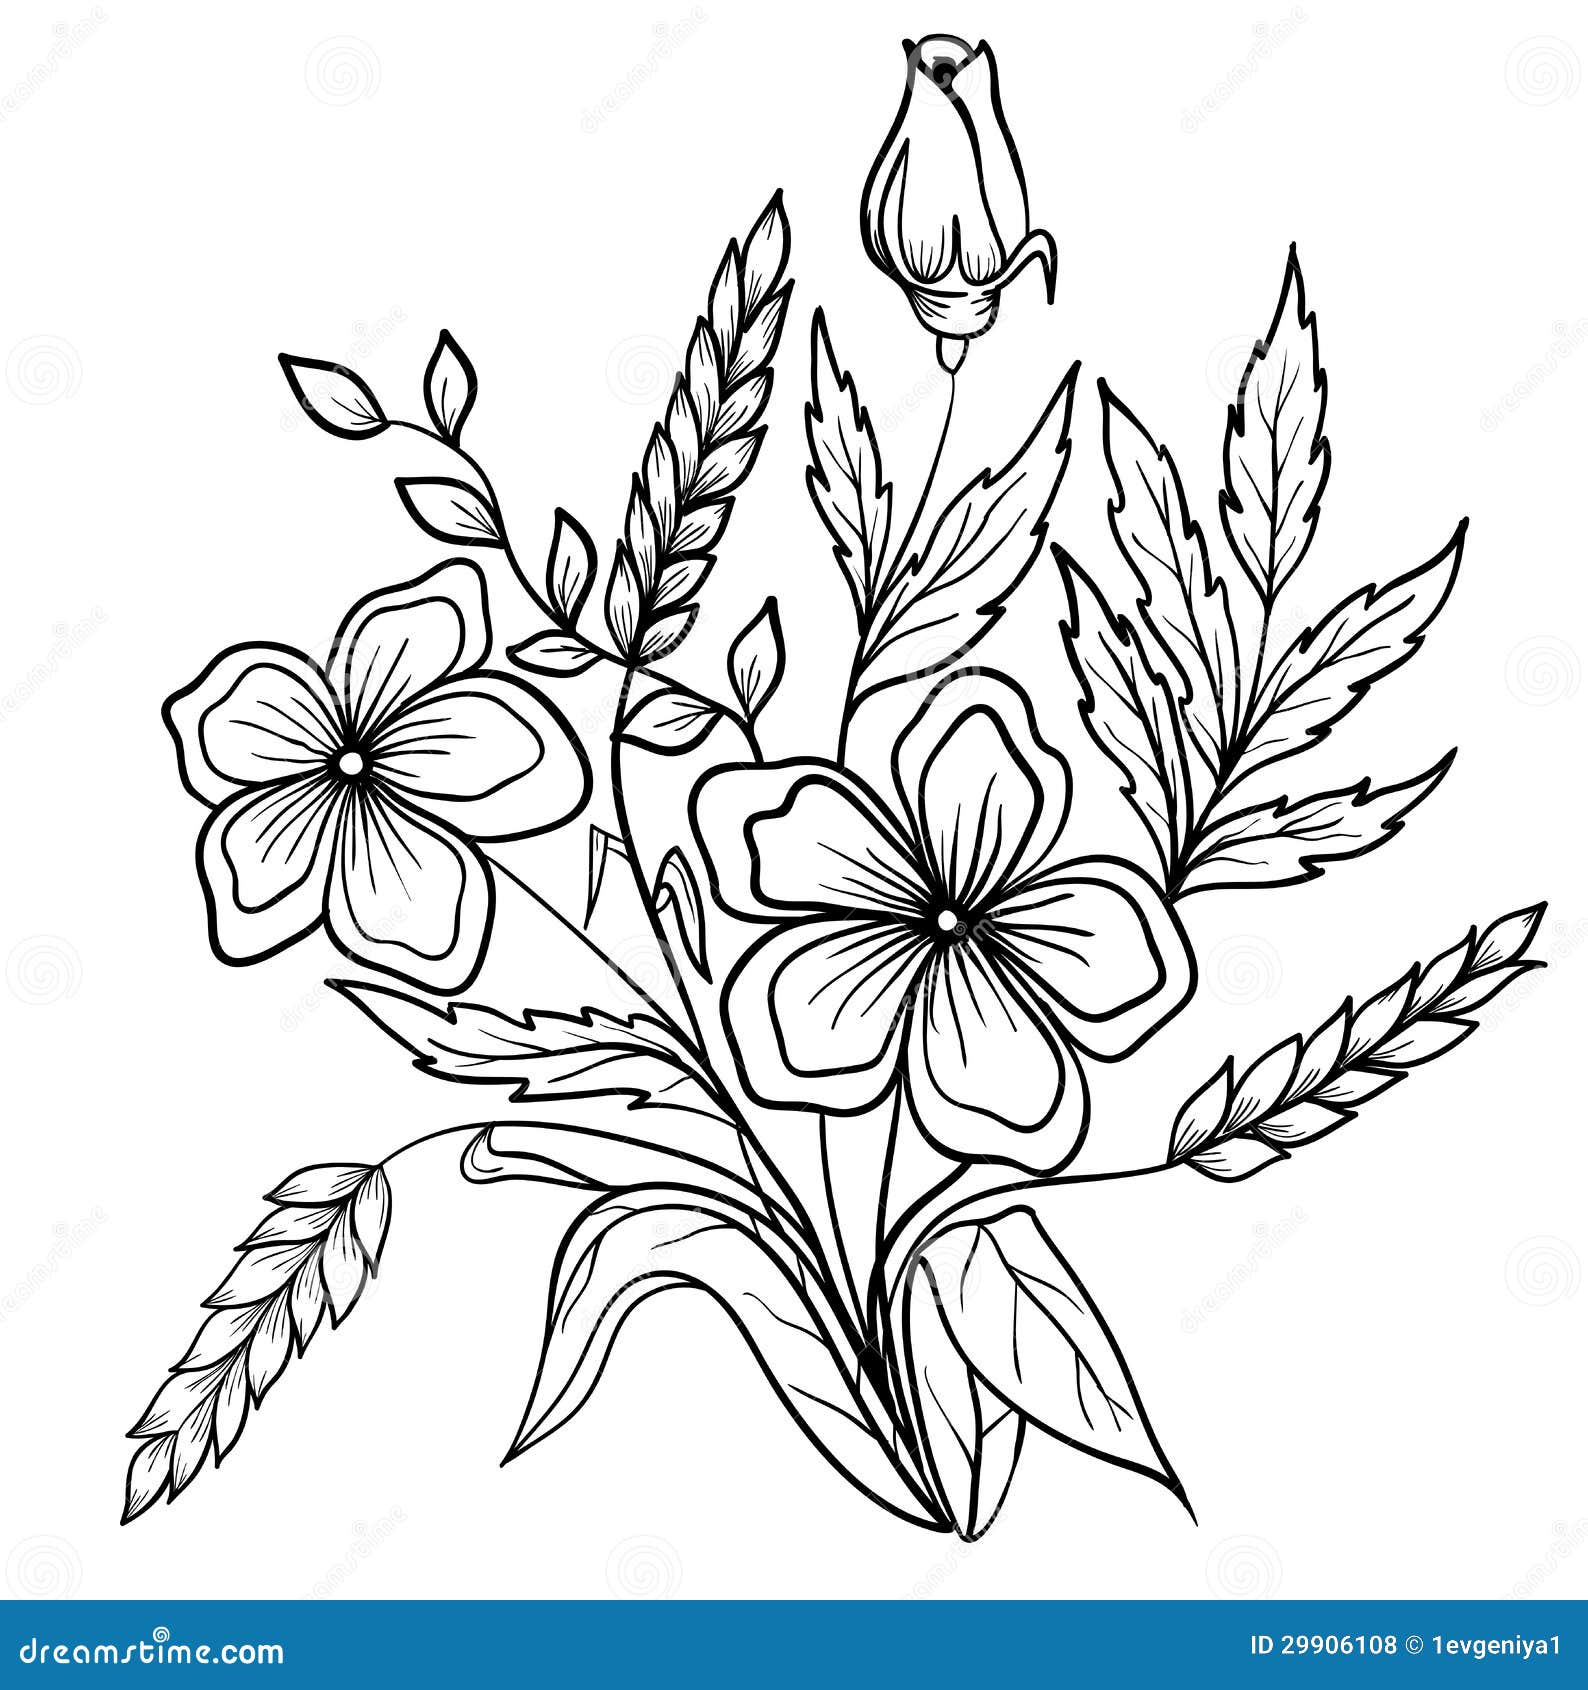 Verwonderend Regeling Van Zwart-witte Bloemen. De Tekening Van Het Overzicht NH-26